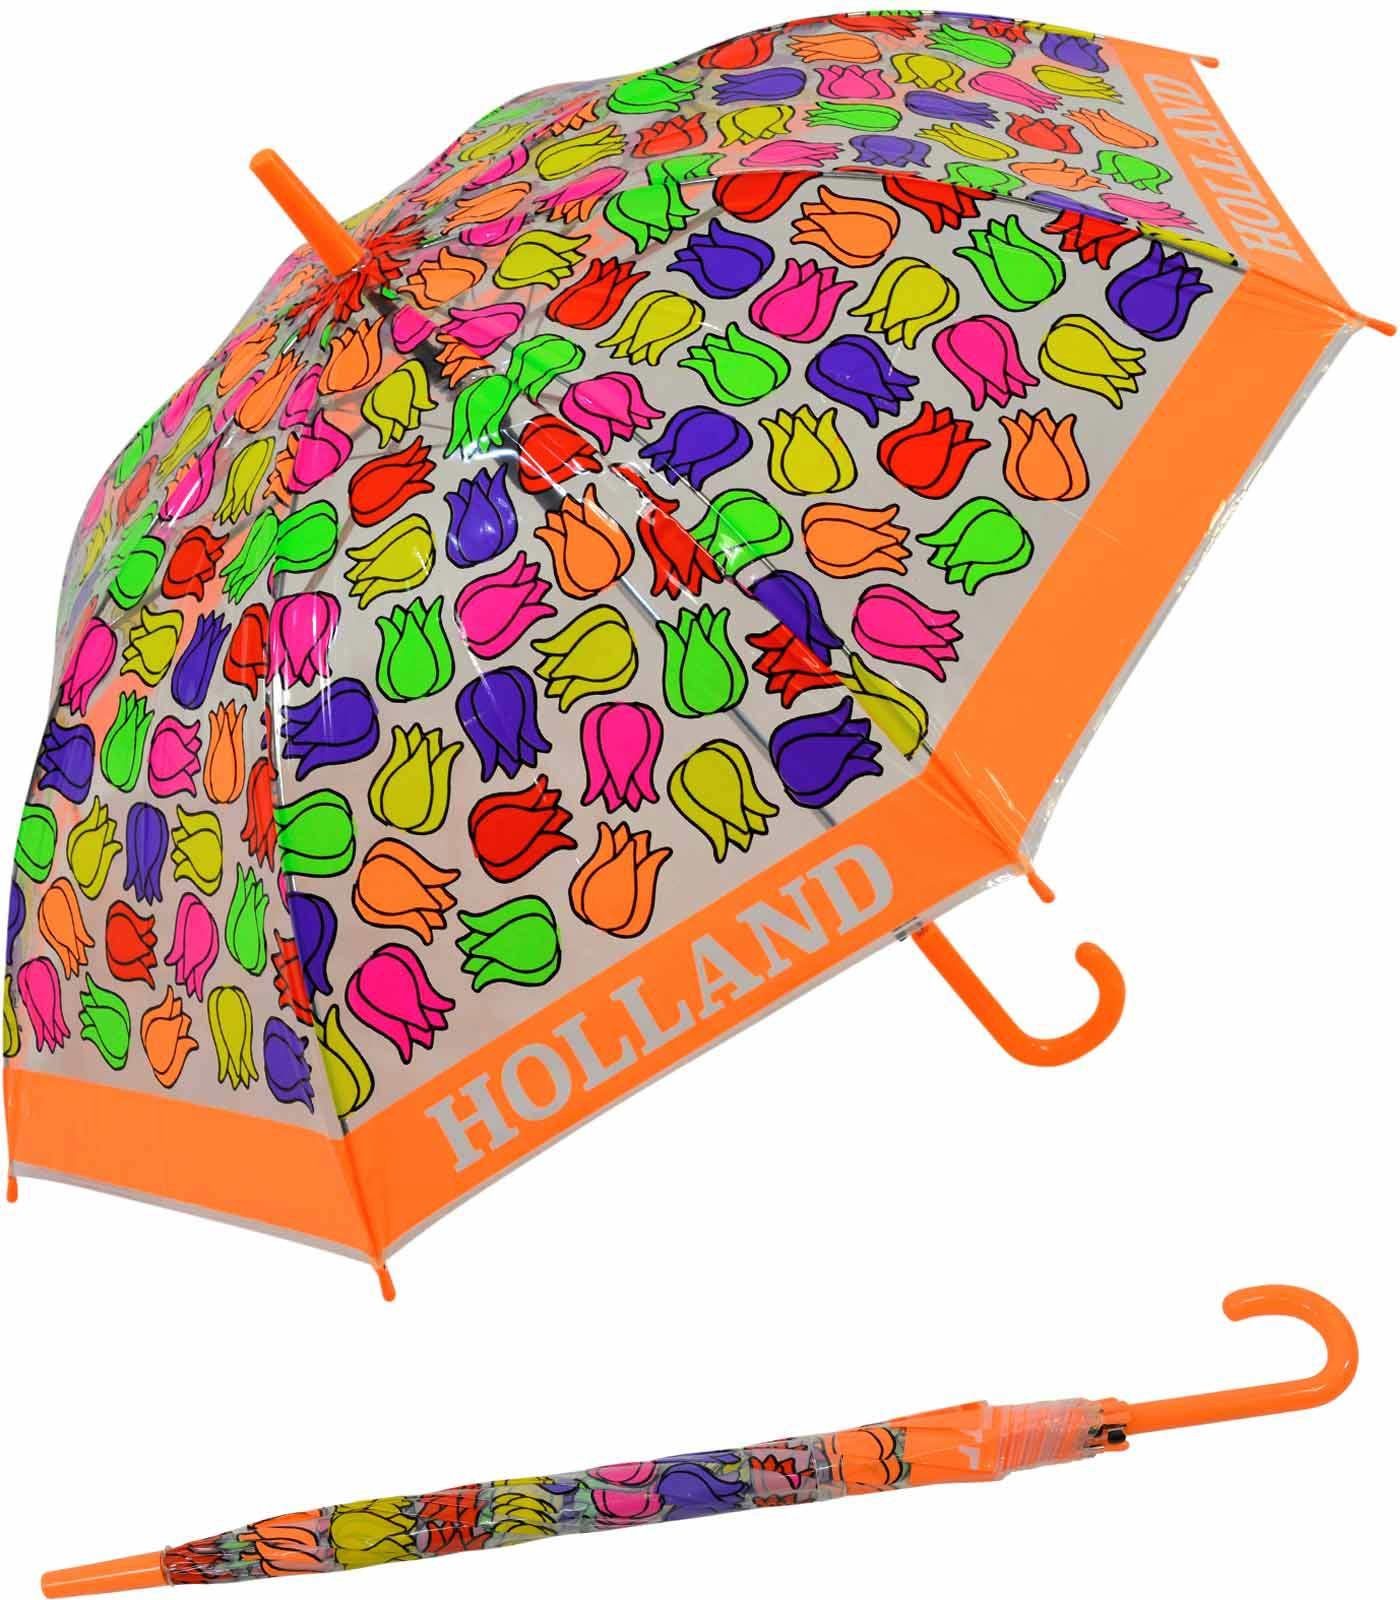 Falconetti Impliva Langregenschirm orange transparent durchsichtig bunt Tulpen, Kinderschirm -